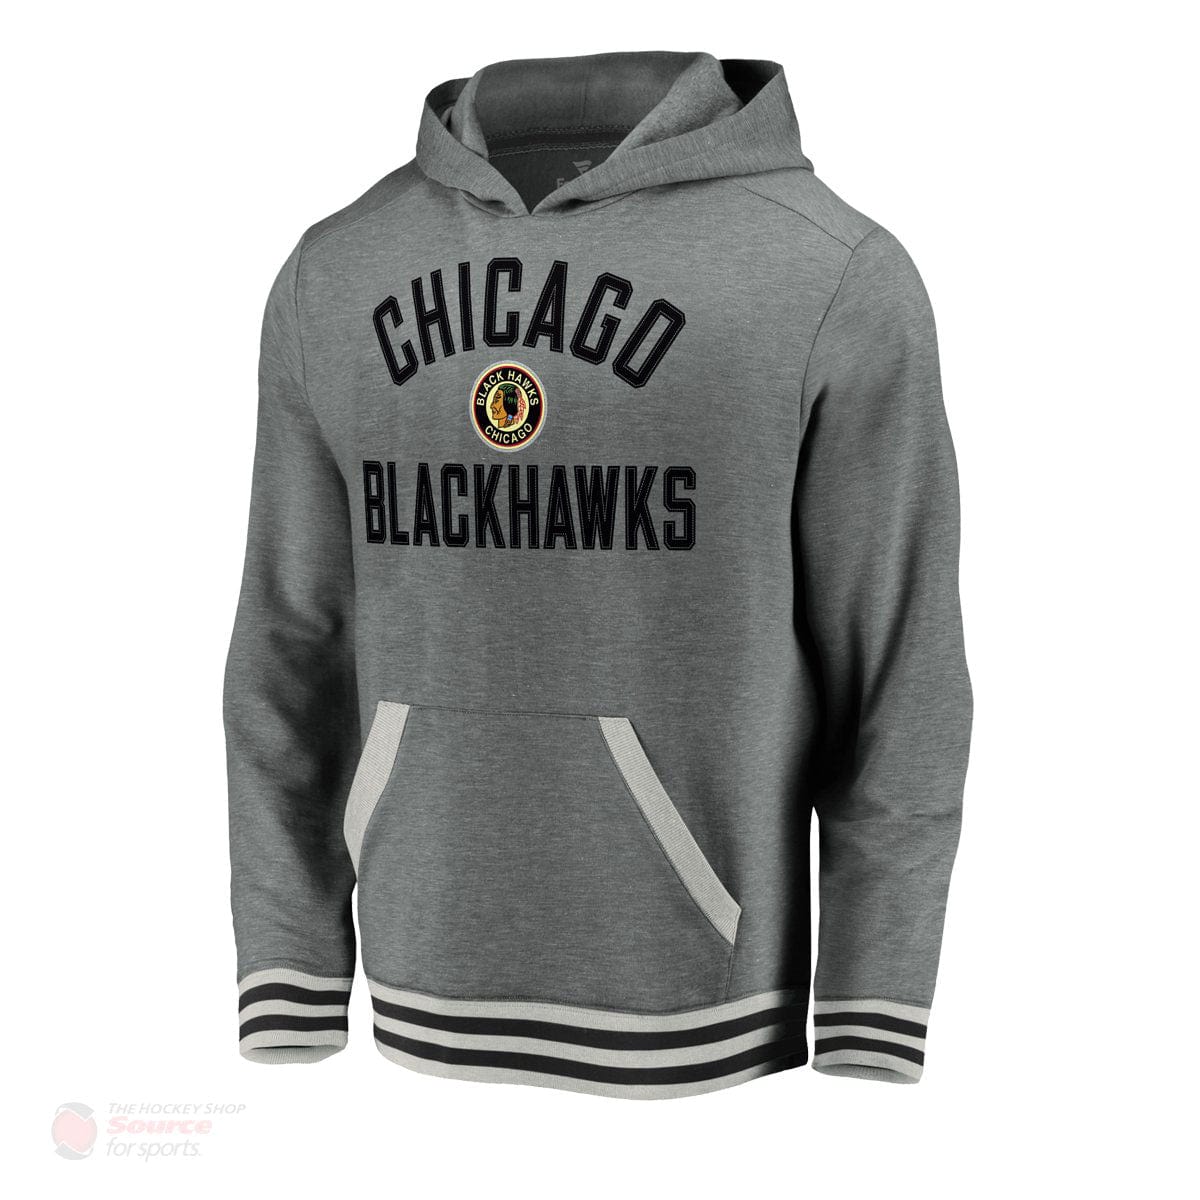 Chicago Blackhawks Fanatics Upperclassmen Vintage Pullover Mens Hoody